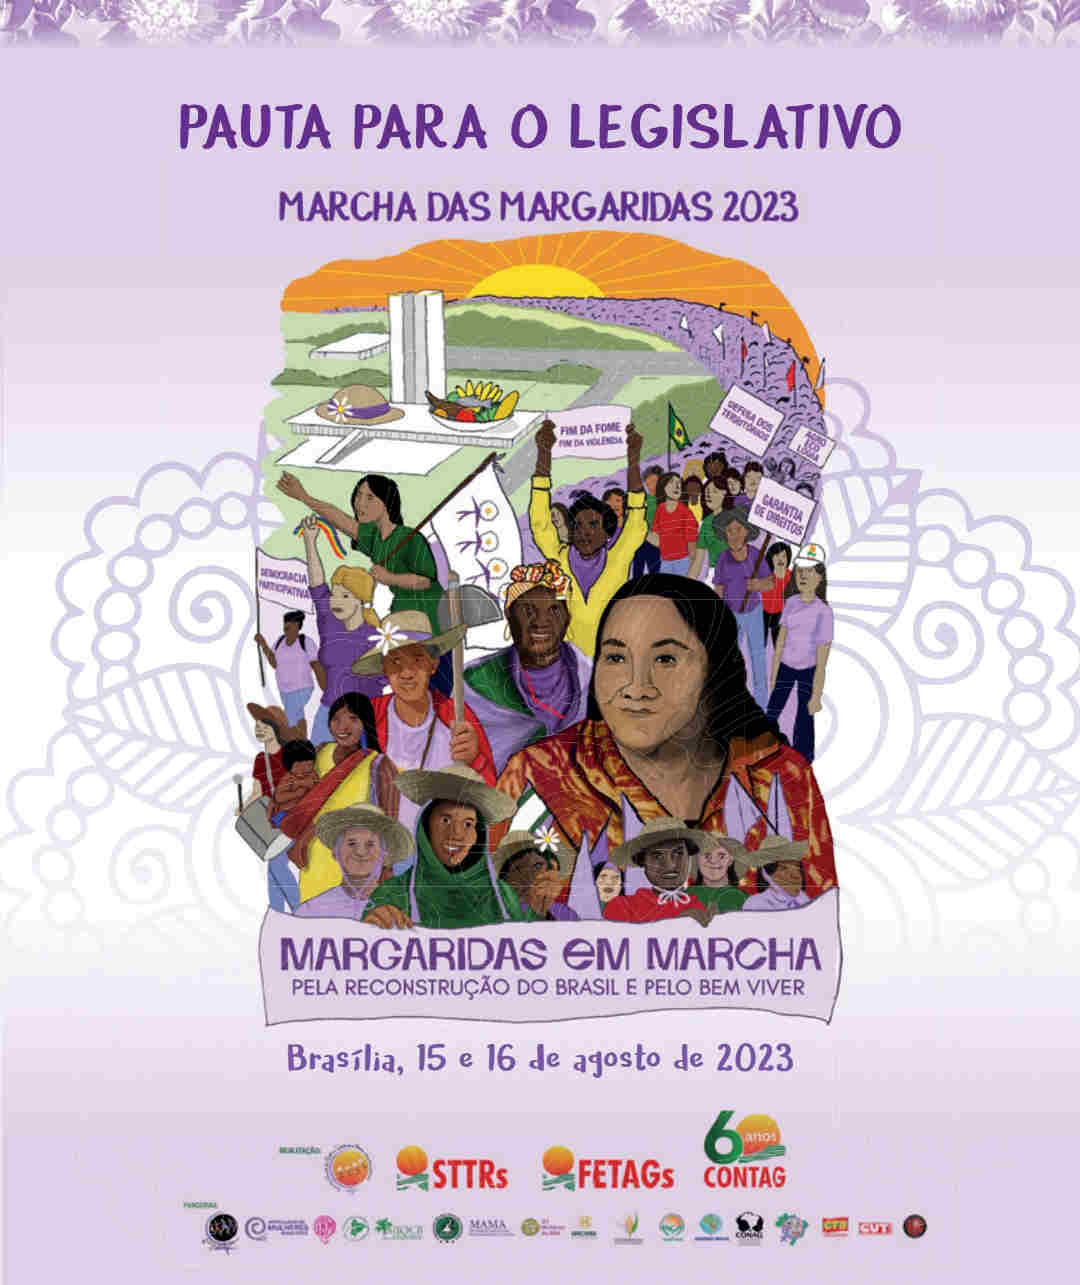 Marcha das Margaridas 2023 - Pauta Legislativa